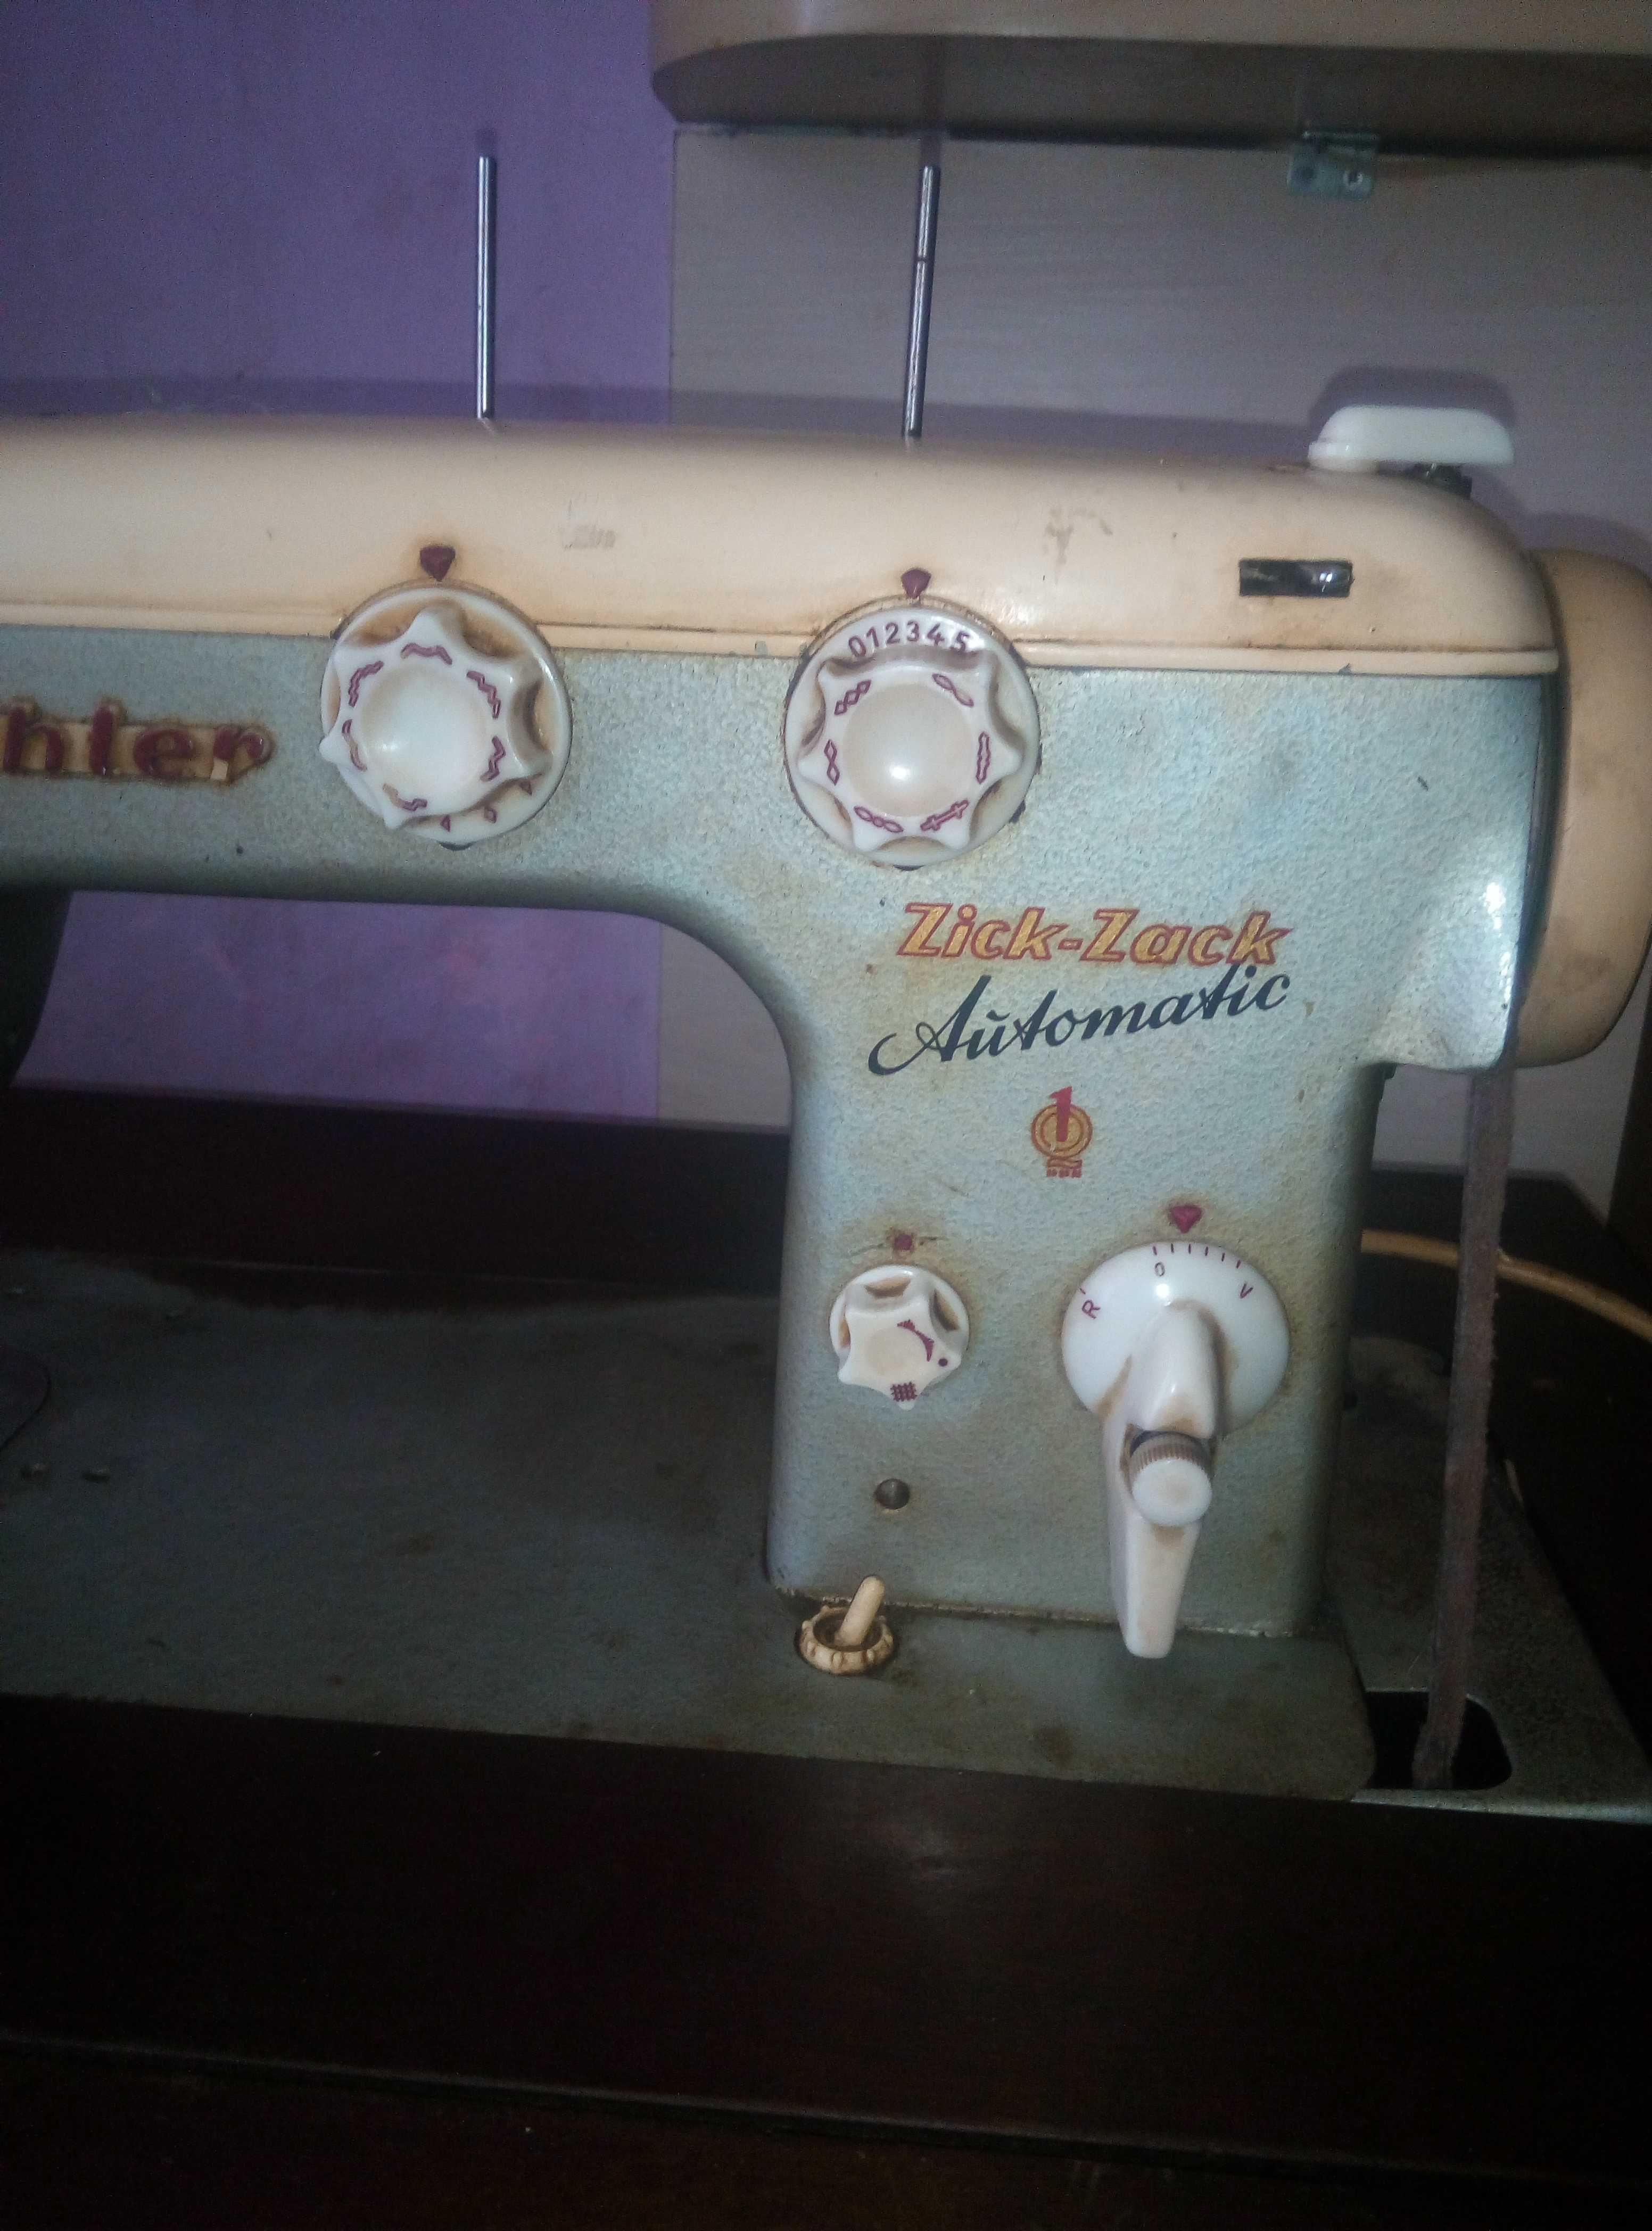 Швейная машинка кехлер зиг-заг автомат.